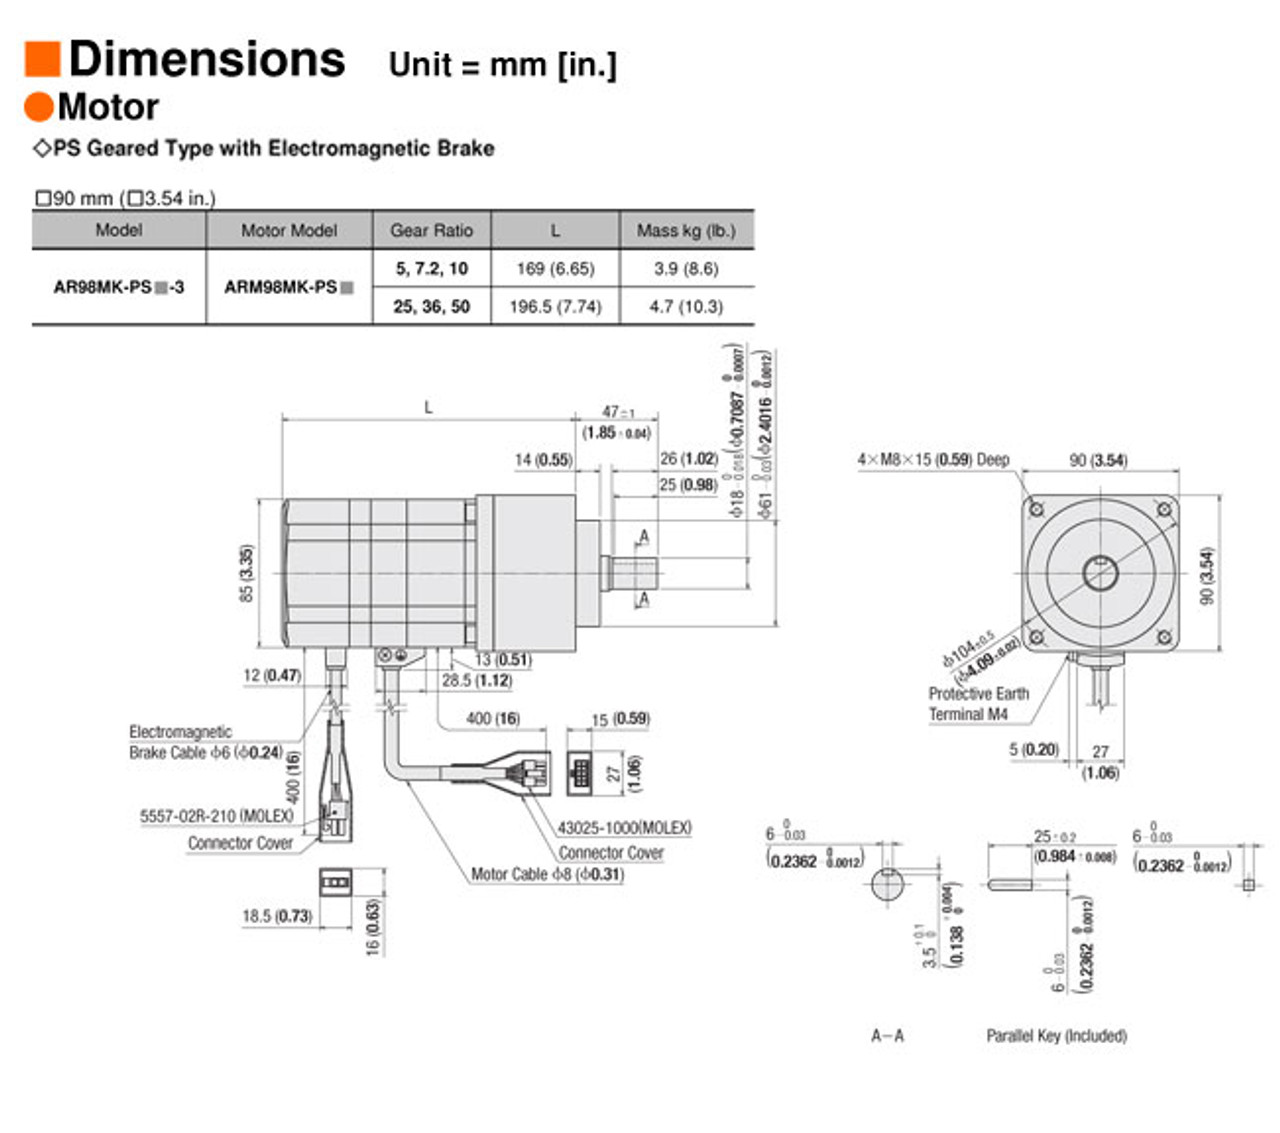 AR98MK-PS7-3 - Dimensions